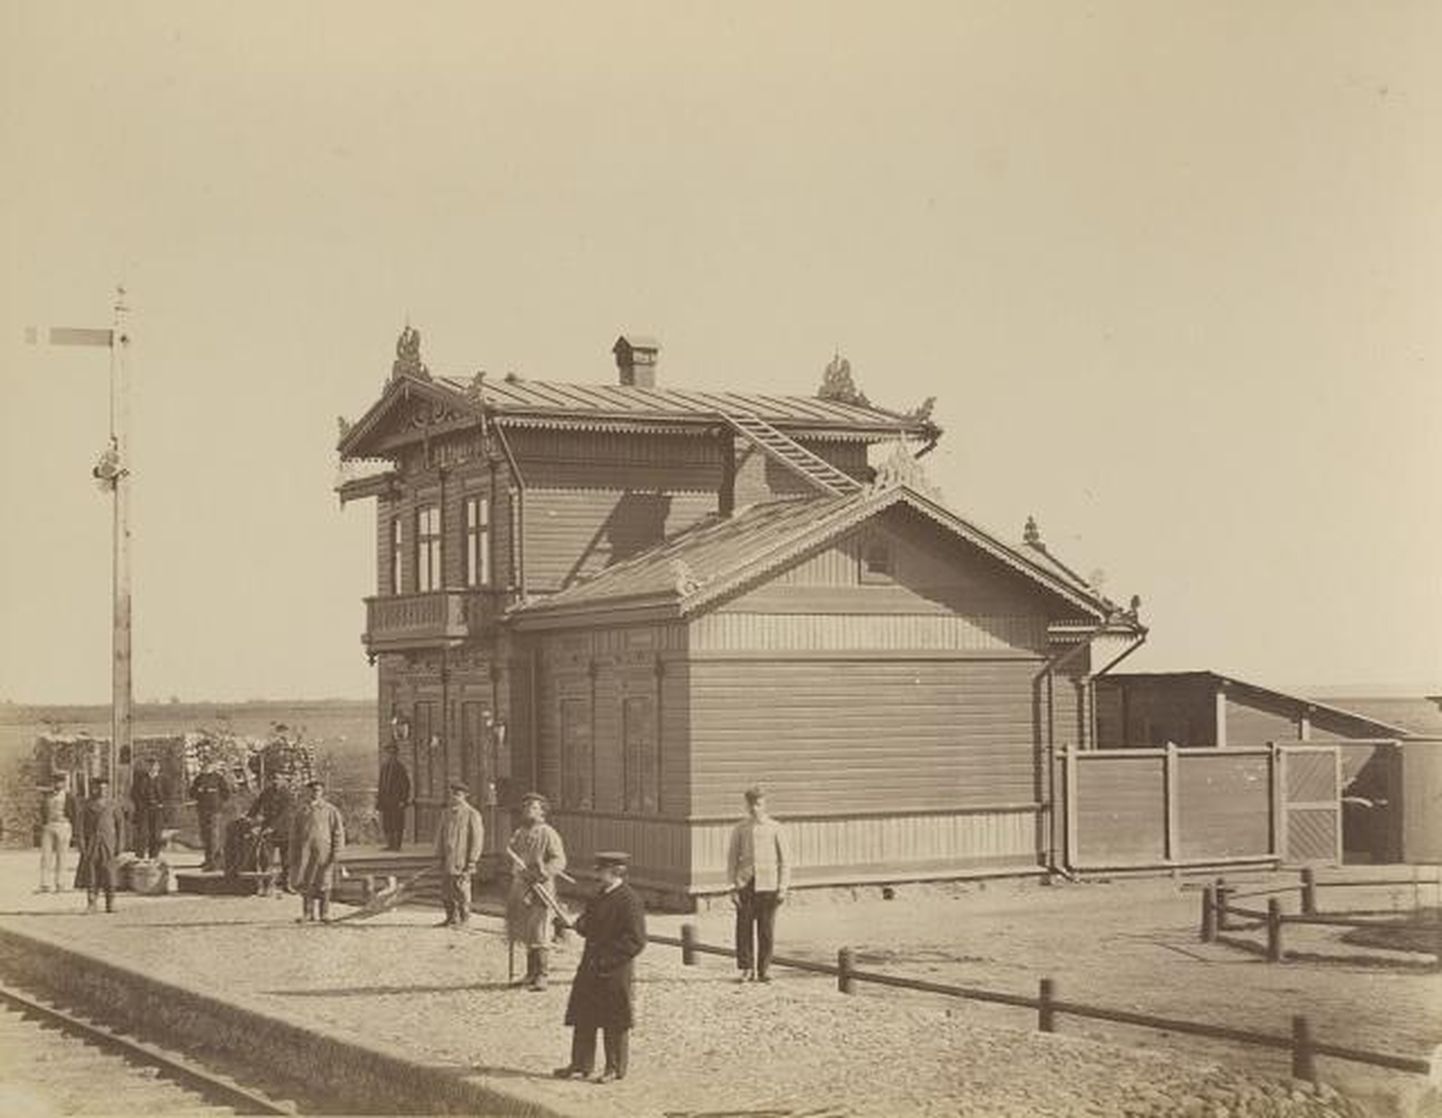 Kadrina esimene jaamahoone. Foto originaal asub Tallinna linnamuuseumi kogus, foto on elektrooniliselt avaldatud Vikipeedias.